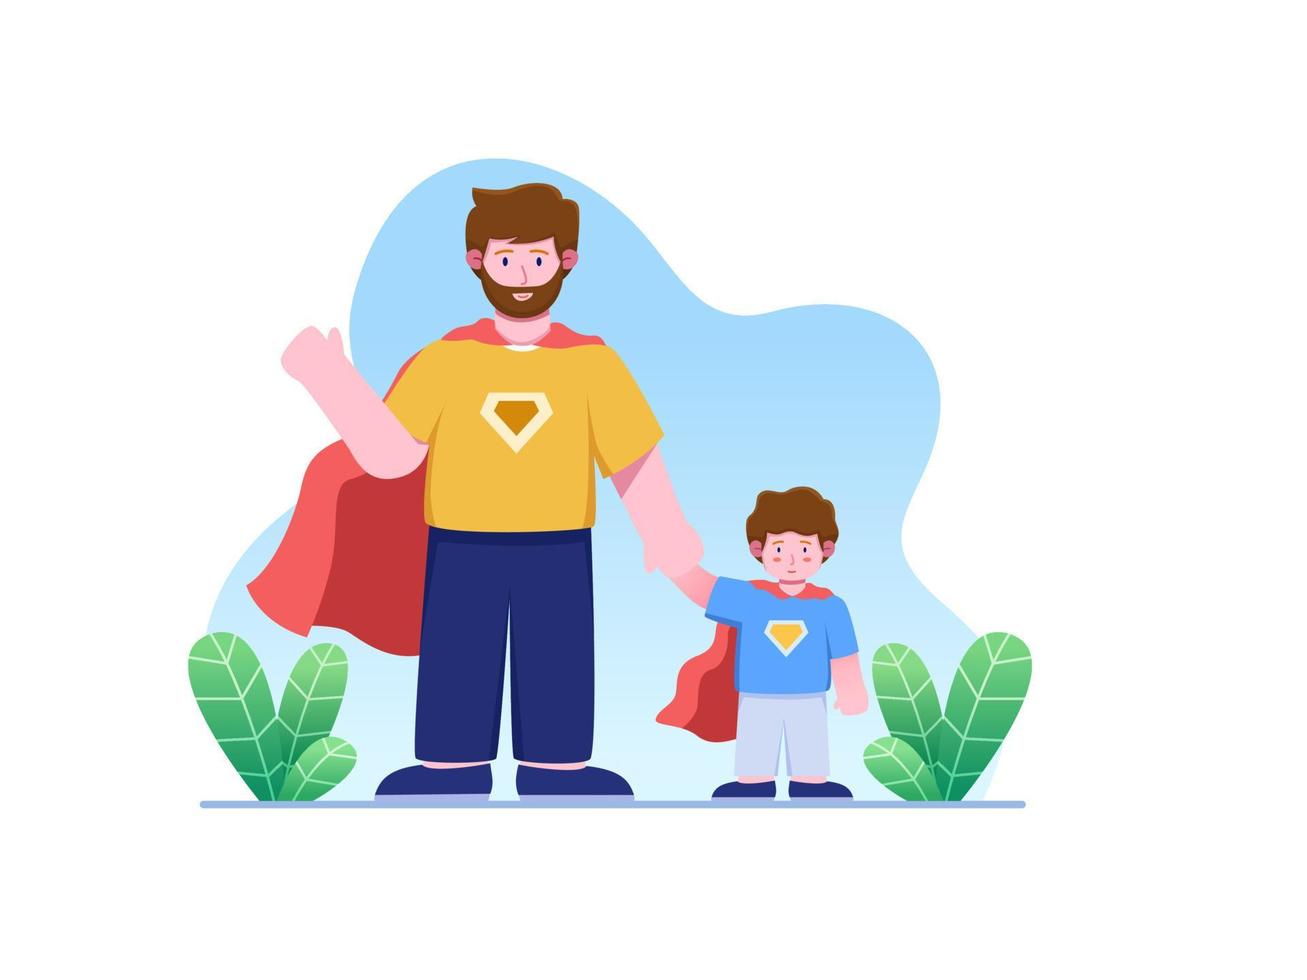 ilustração do dia dos pais com pai e filho vestindo fantasia de super-herói. pai e filho comemoram o dia dos pais juntos. pode ser usado para cartão de felicitações, web, cartão postal, animação, etc vetor